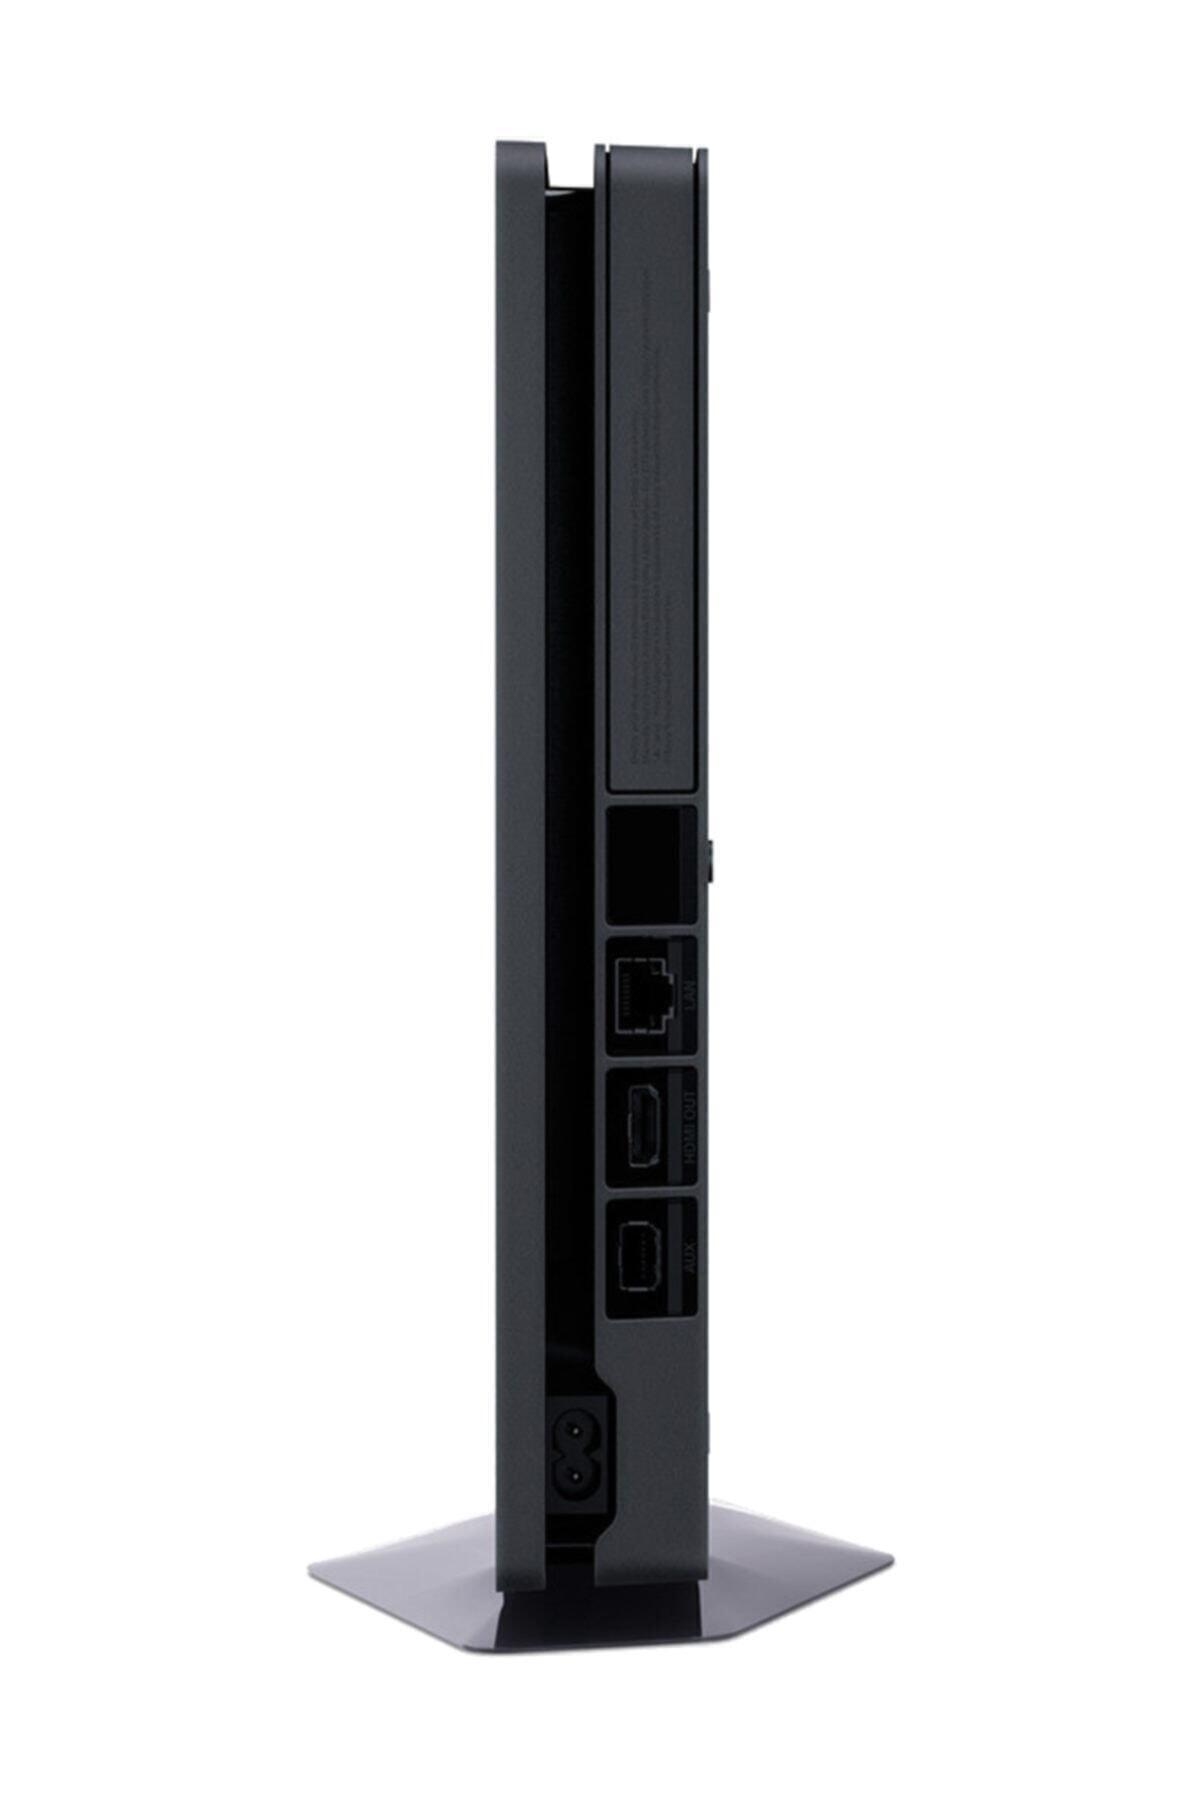 کنسول بازی PS4 Slim حافظه 500 گیگابایت کد.1003